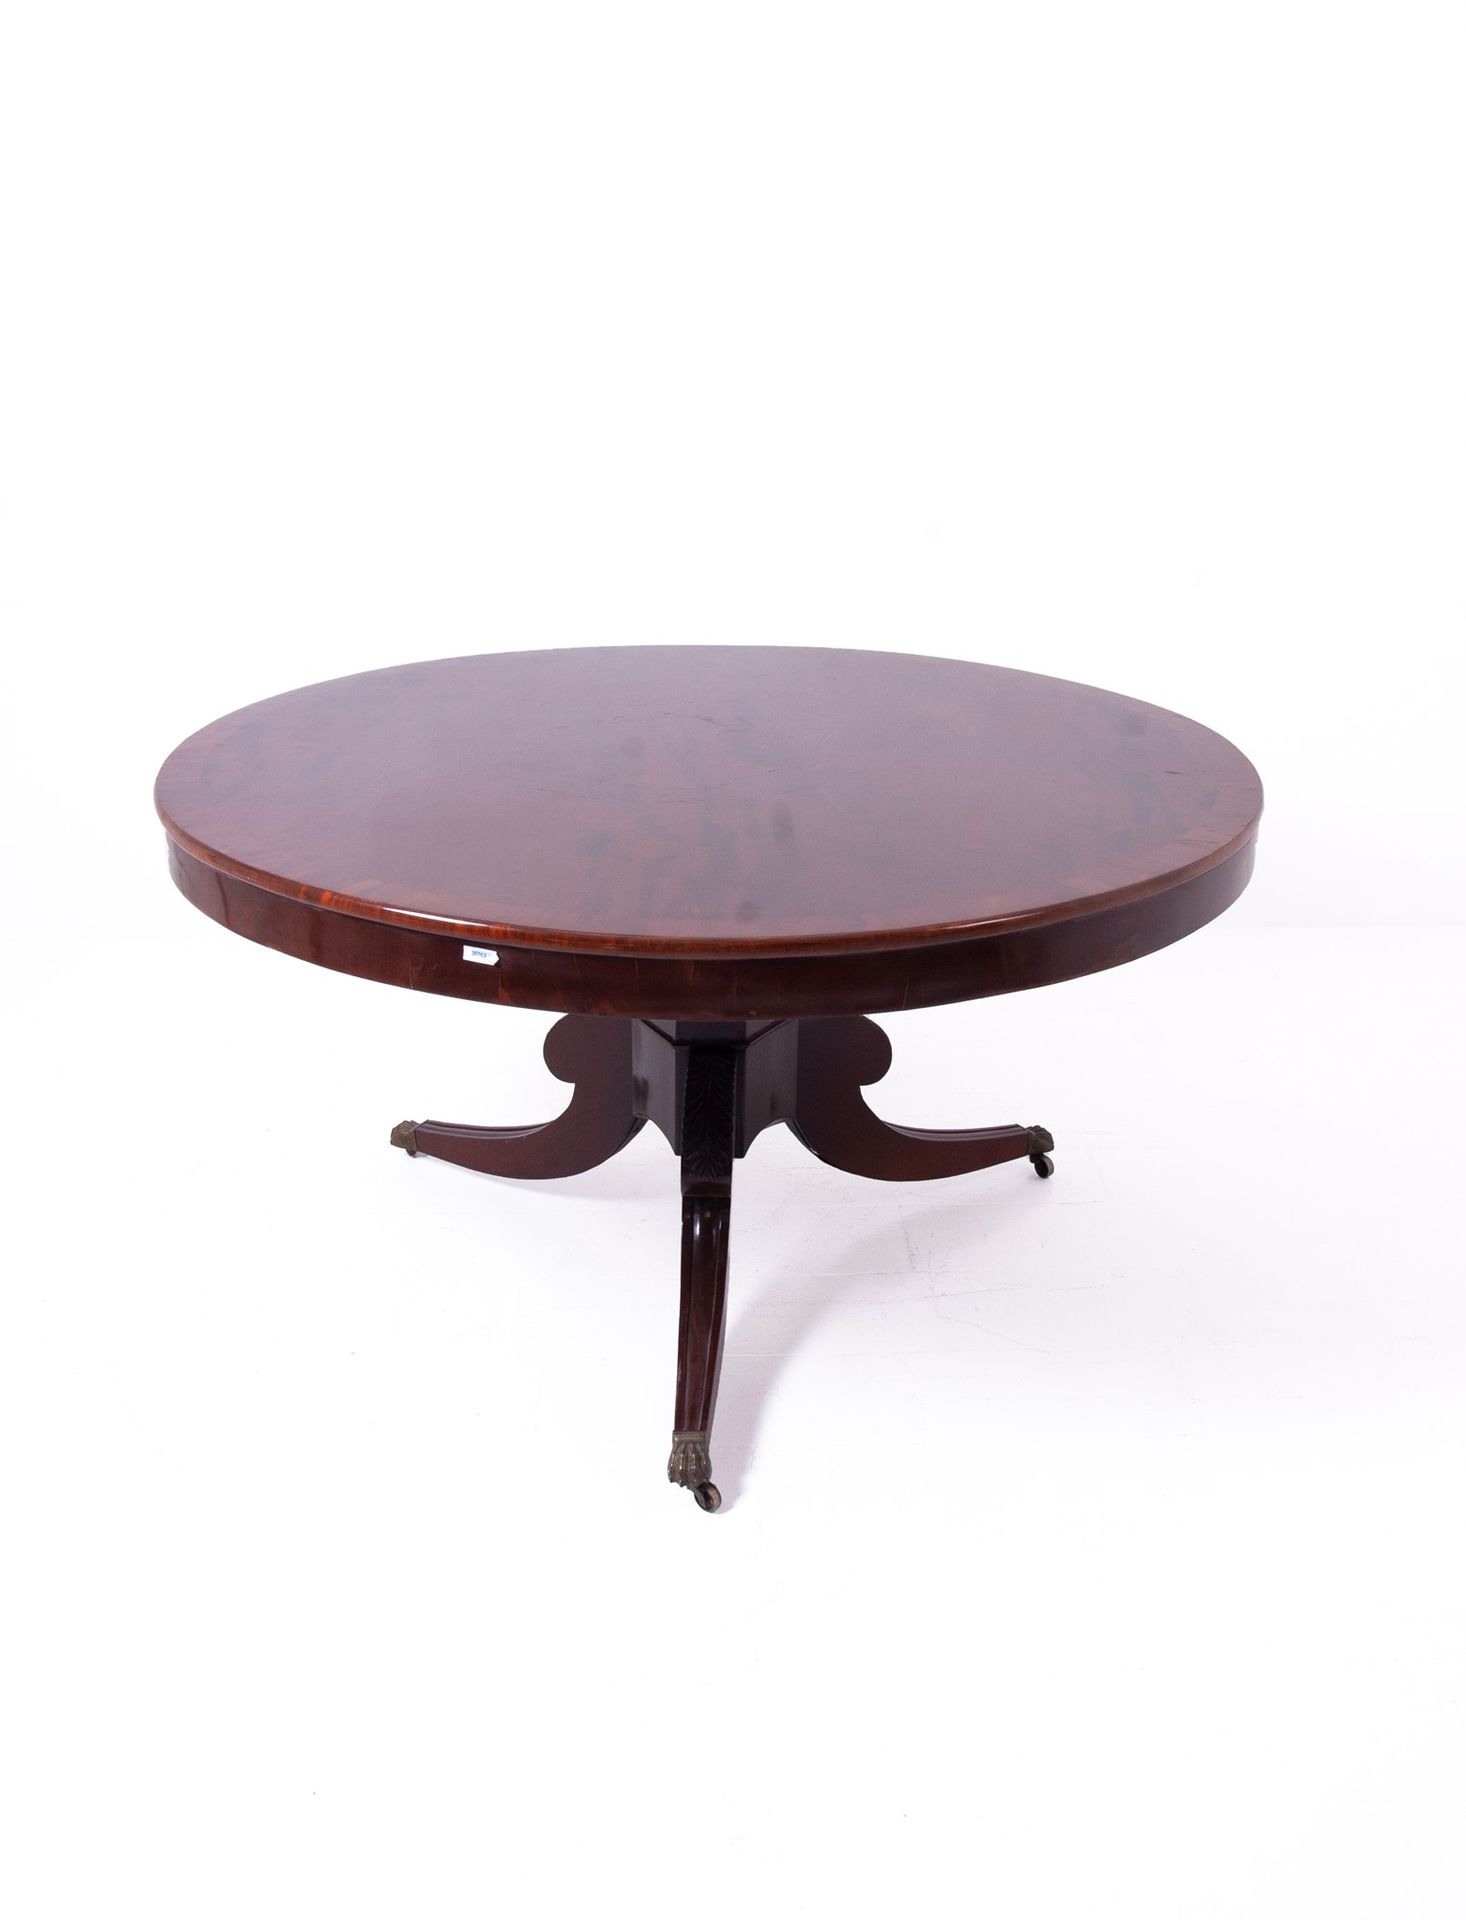 Round table 桃花心木羽毛圆桌，位于中央立柱和四方形底座上。英国。19世纪初。74x138厘米左右。